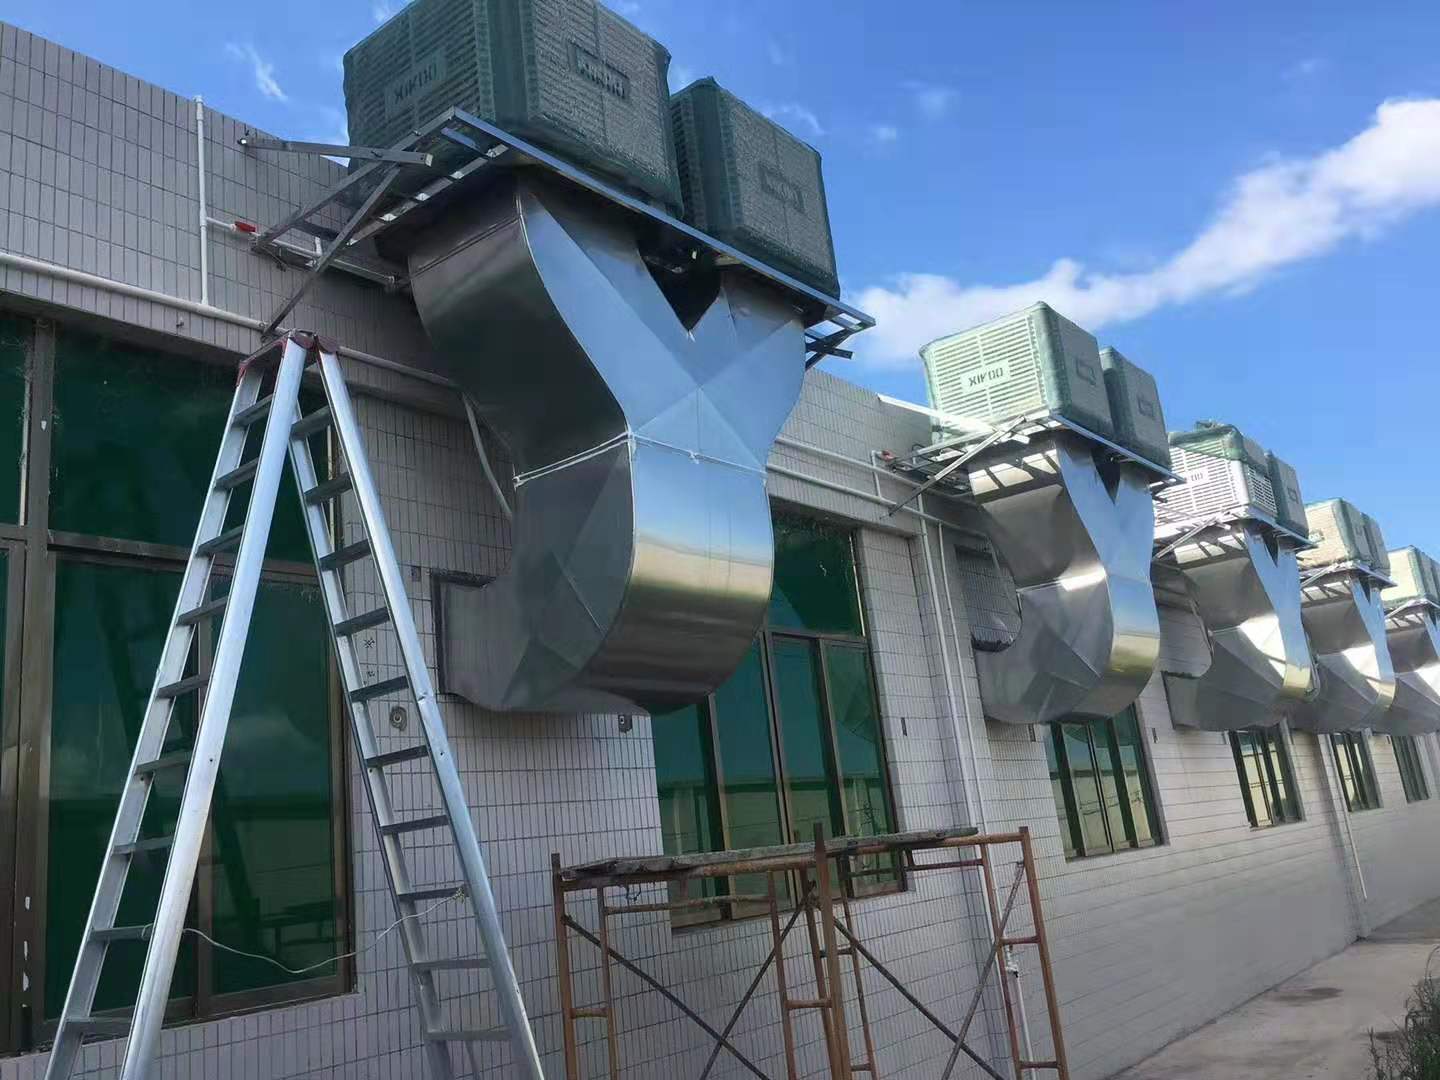 El refrigerador d'aire XIKOO aporta frescor i ventilació per al taller